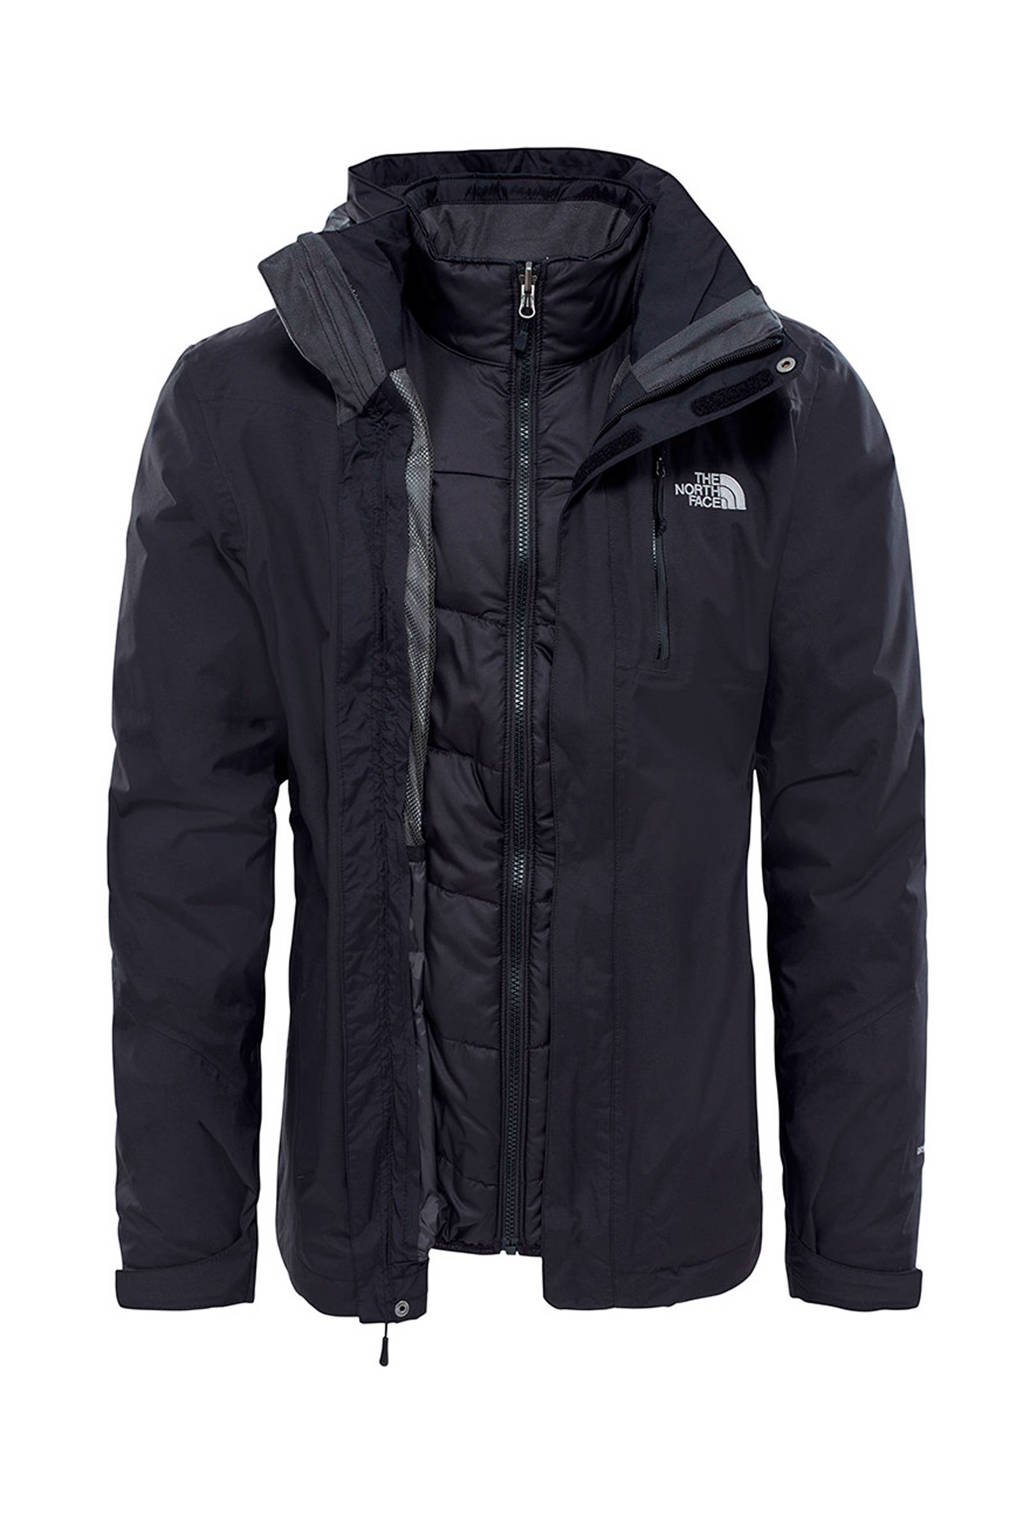 Onbekwaamheid gewoontjes kopen The North Face Solaris Triclimate 3-in-1 outdoor jas | wehkamp